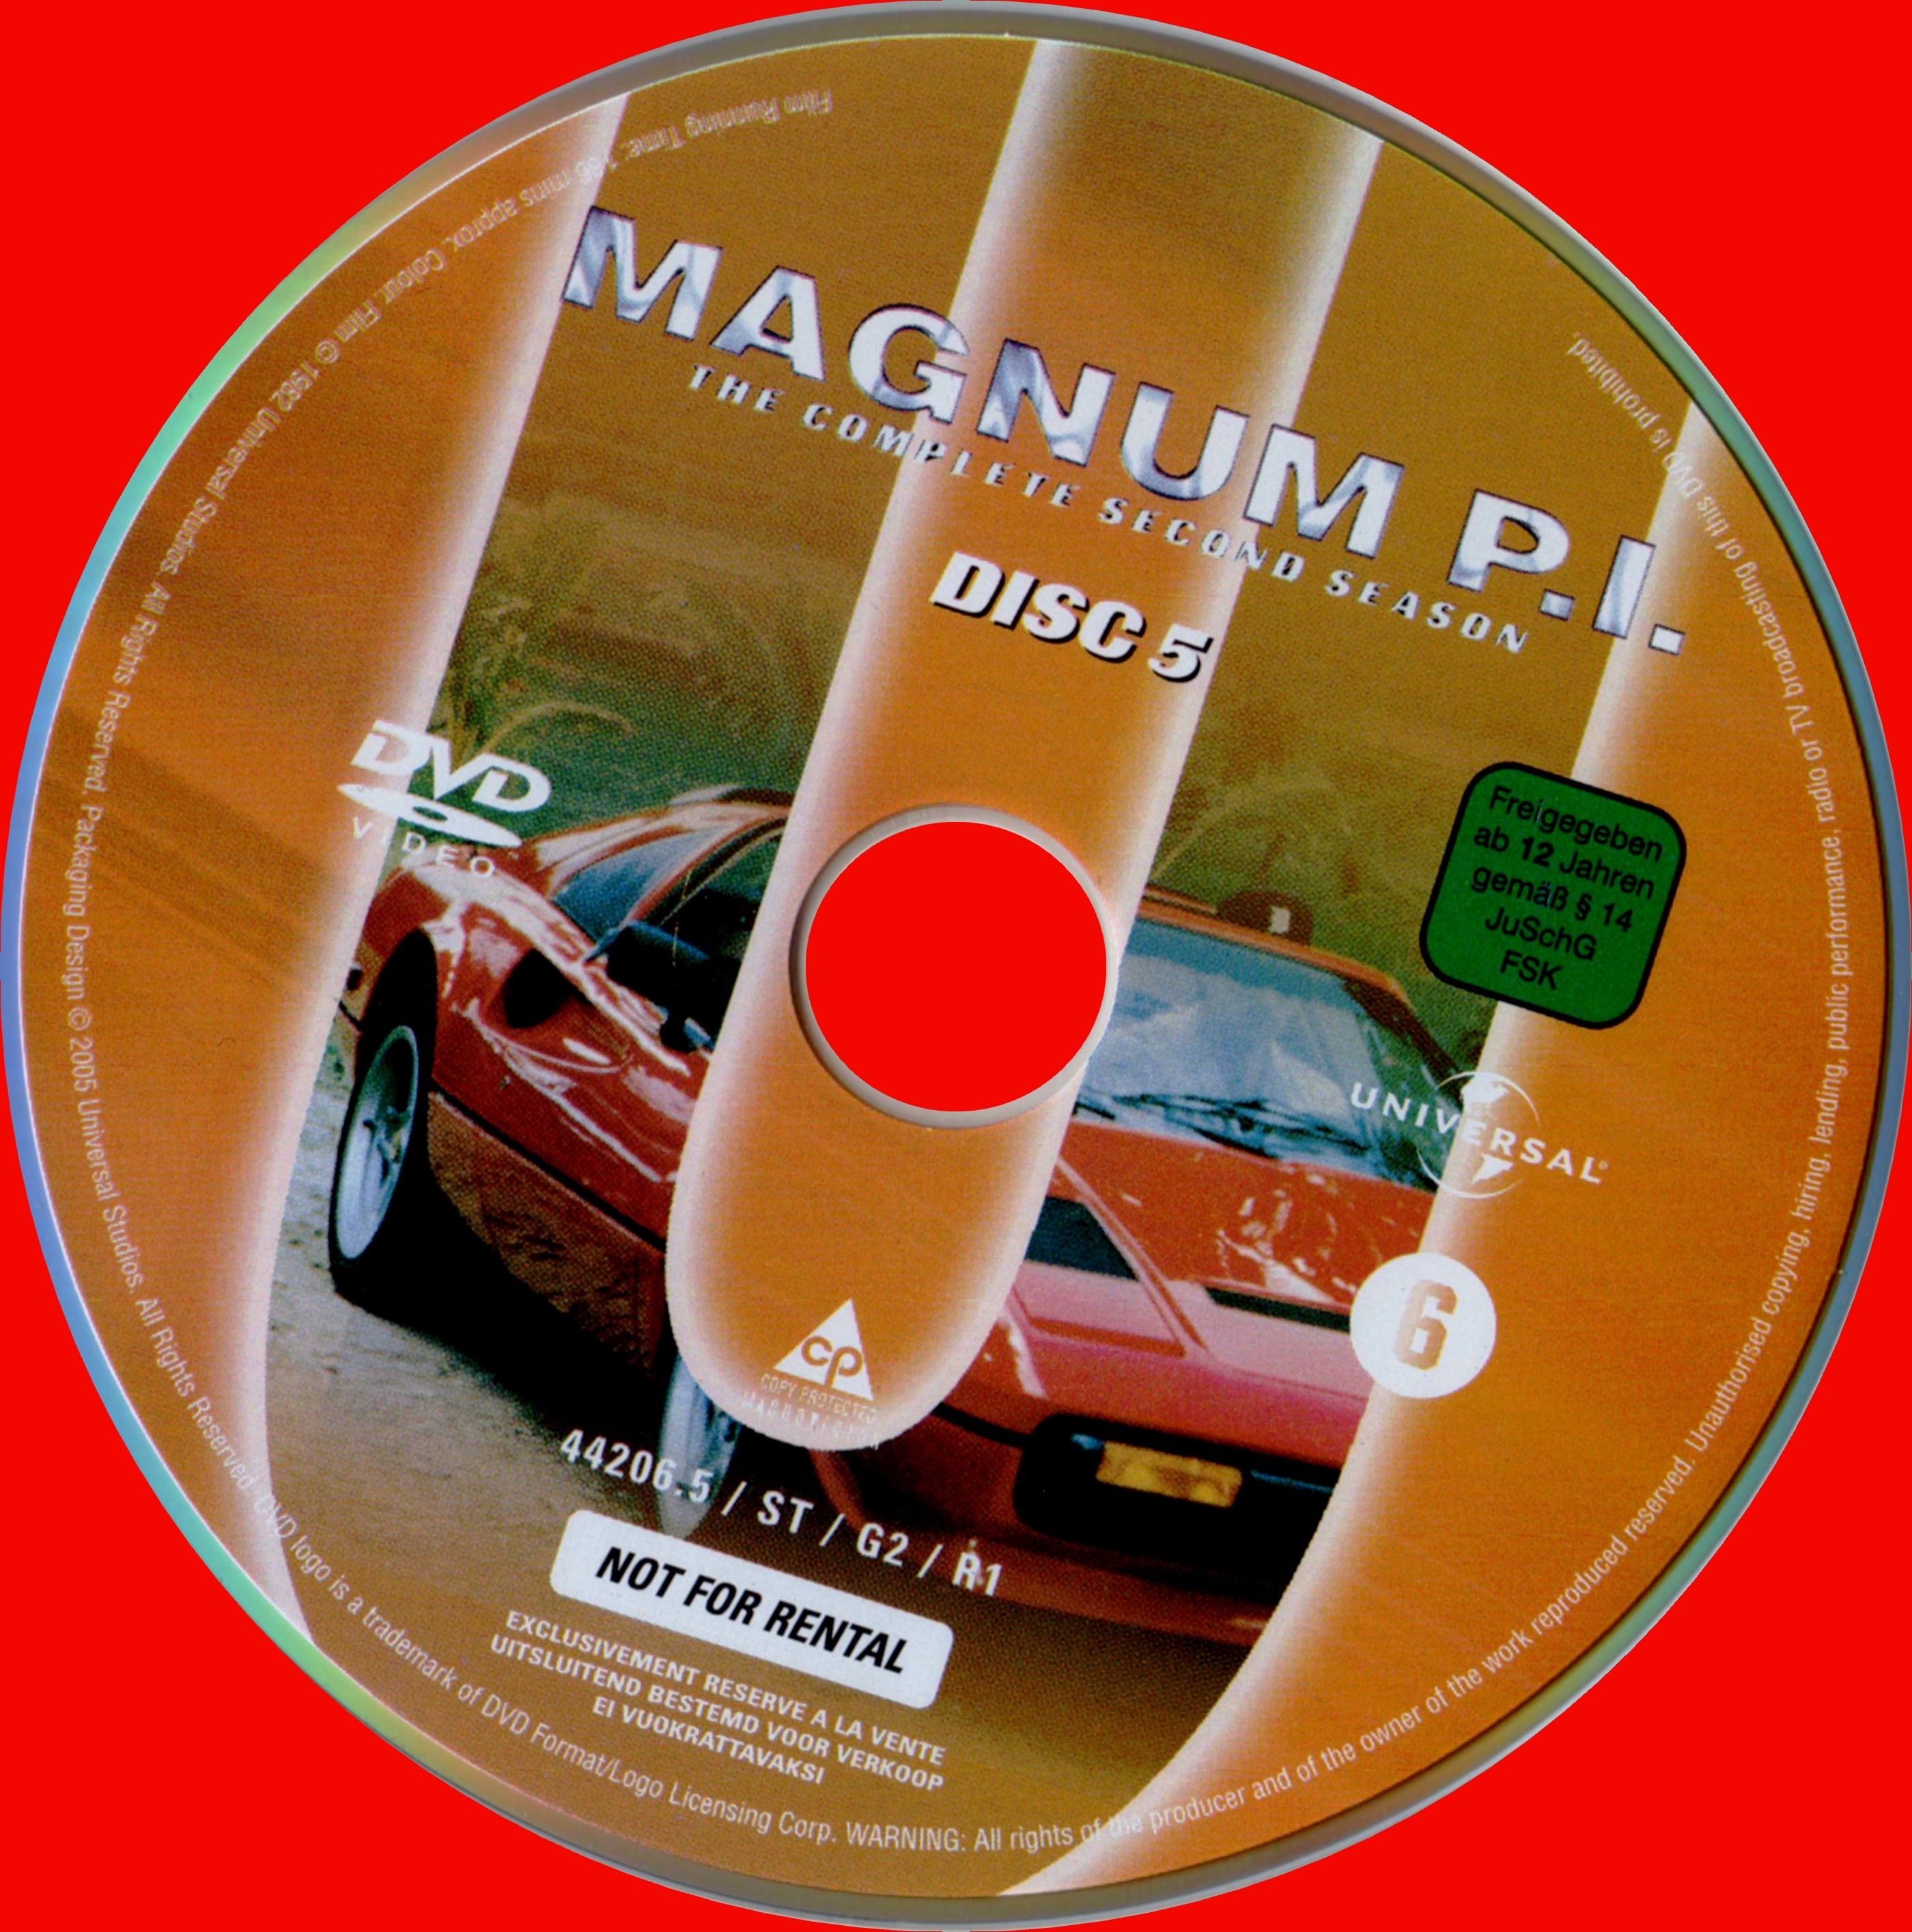 Magnum Saison 2 DISC 5